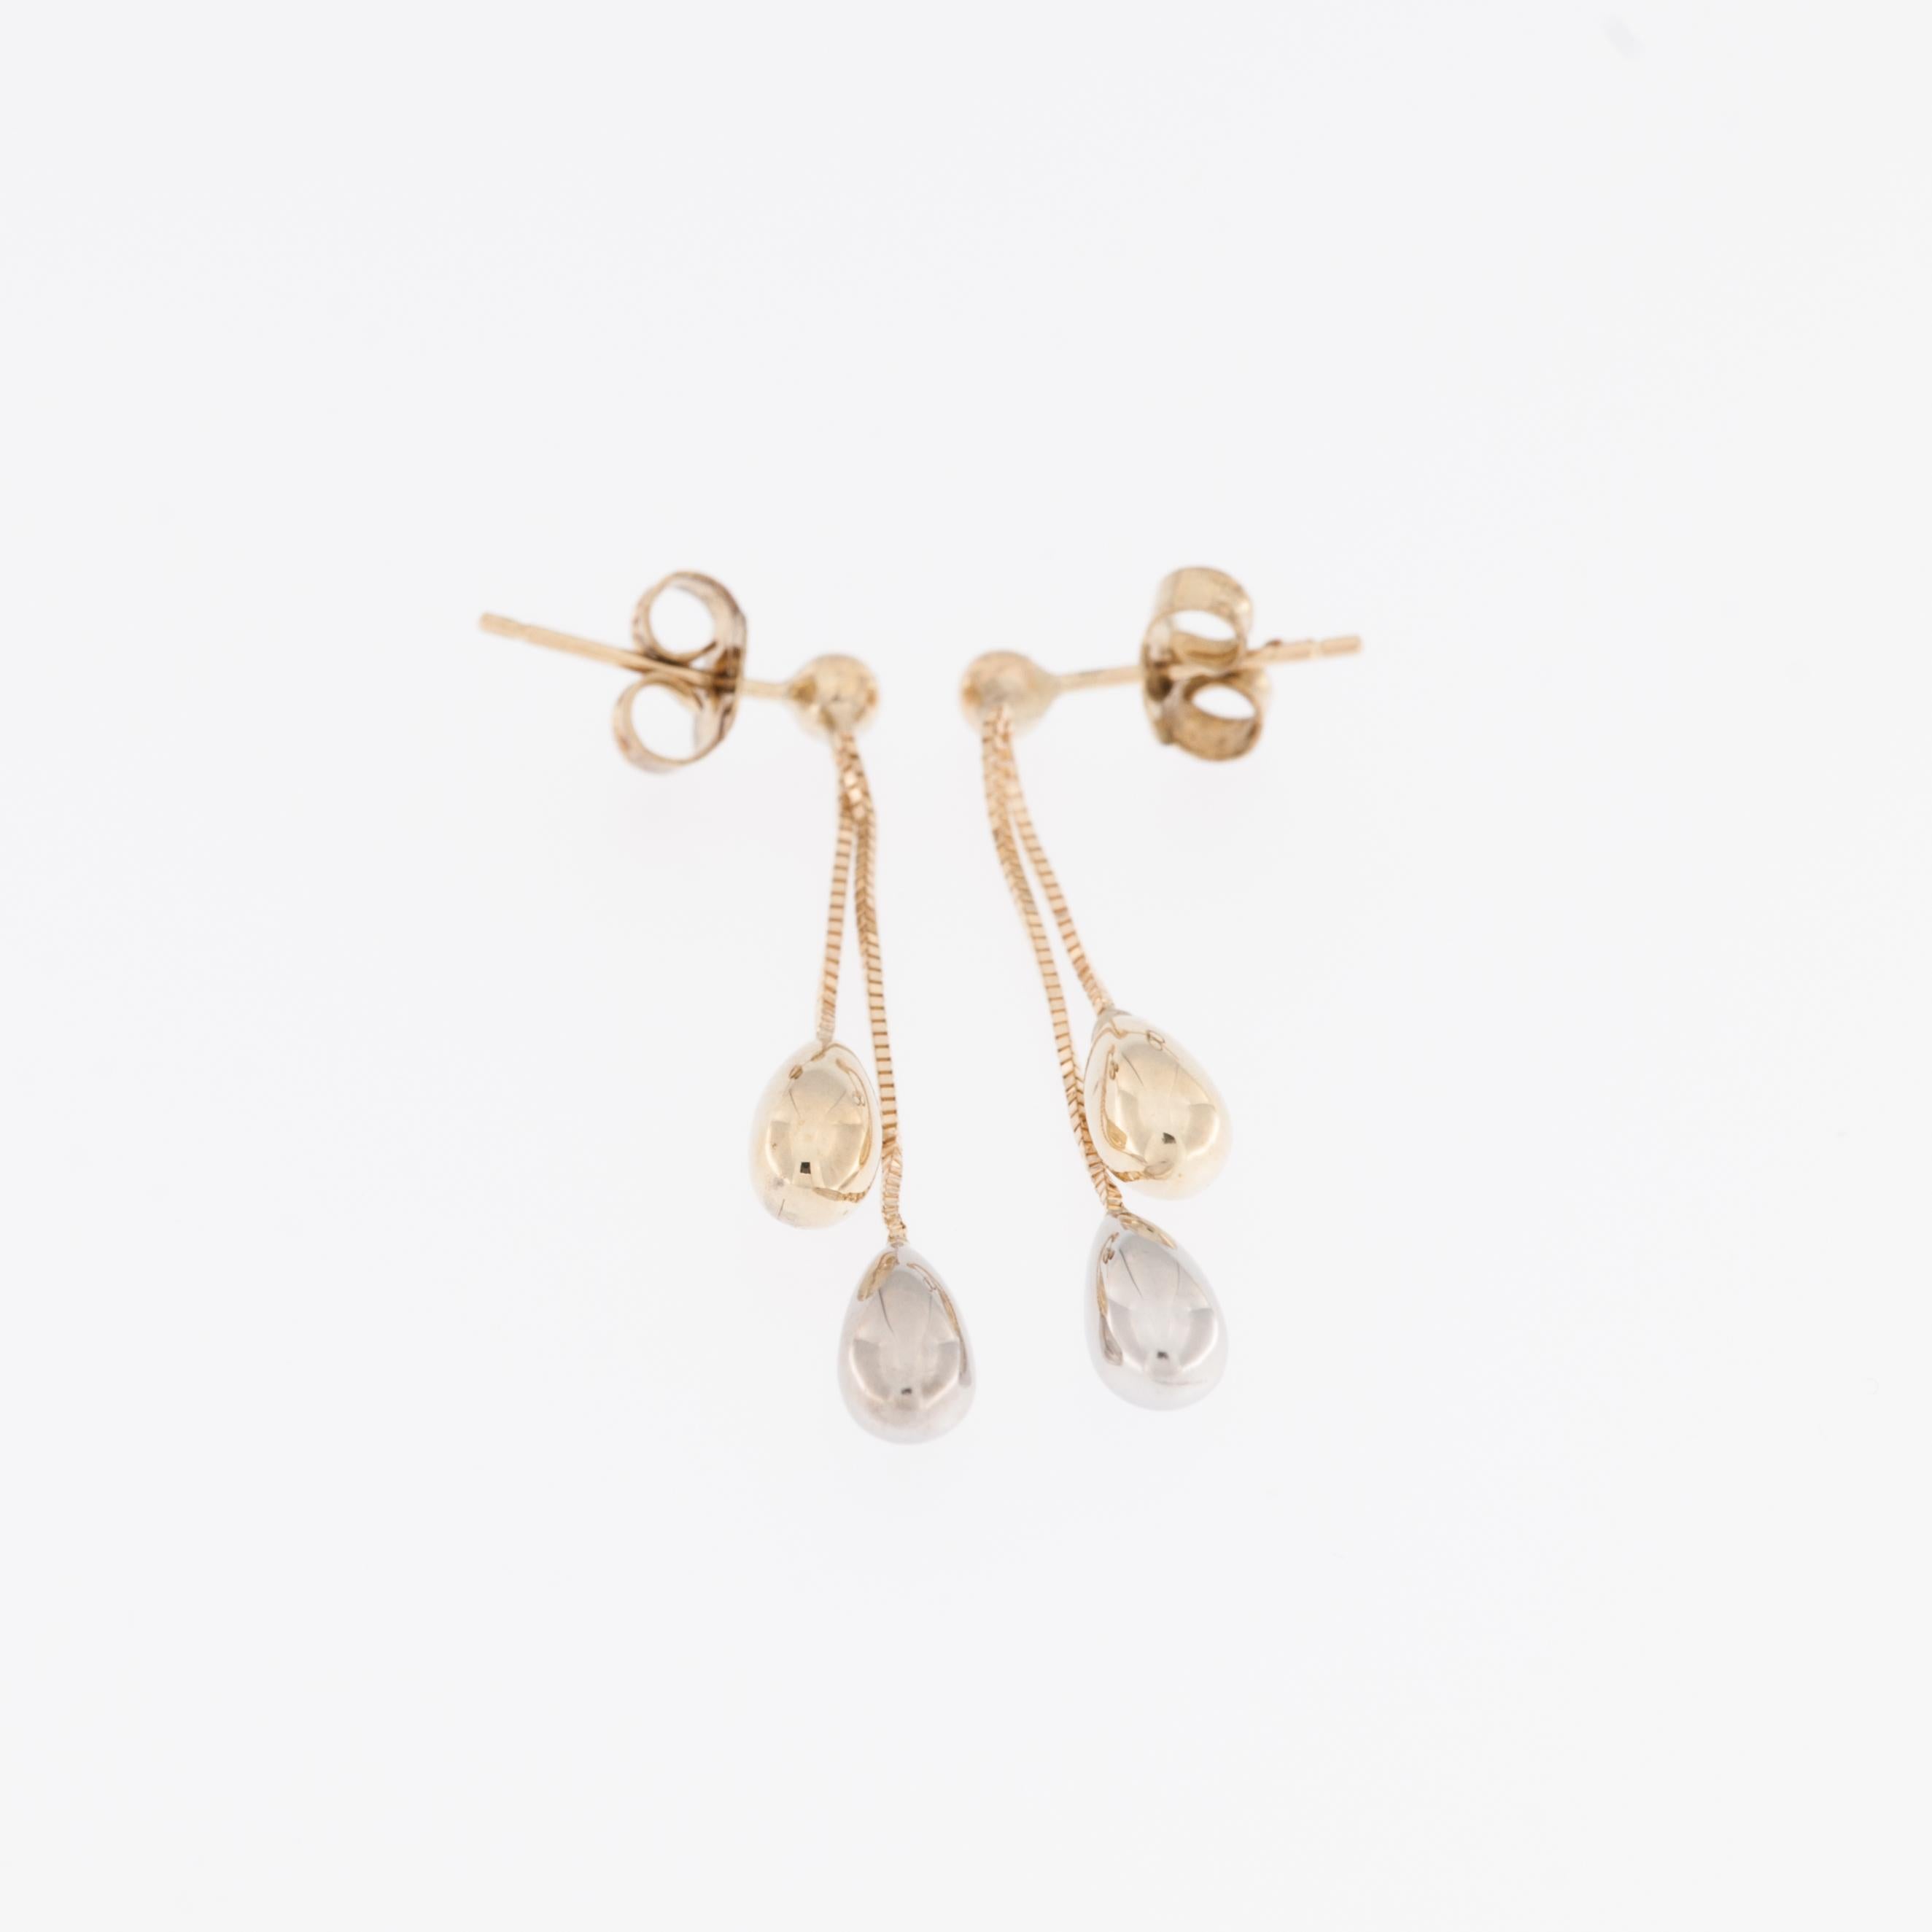 Die Italian Drop Earrings aus 14-karätigem Gelb- und Weißgold sind ein elegantes Schmuckstück, das zwei Edelmetalle zu einem fesselnden Design verbindet. 

Diese Ohrringe sind aus hochwertigem italienischem 14-karätigem (14kt) Gold gefertigt, das